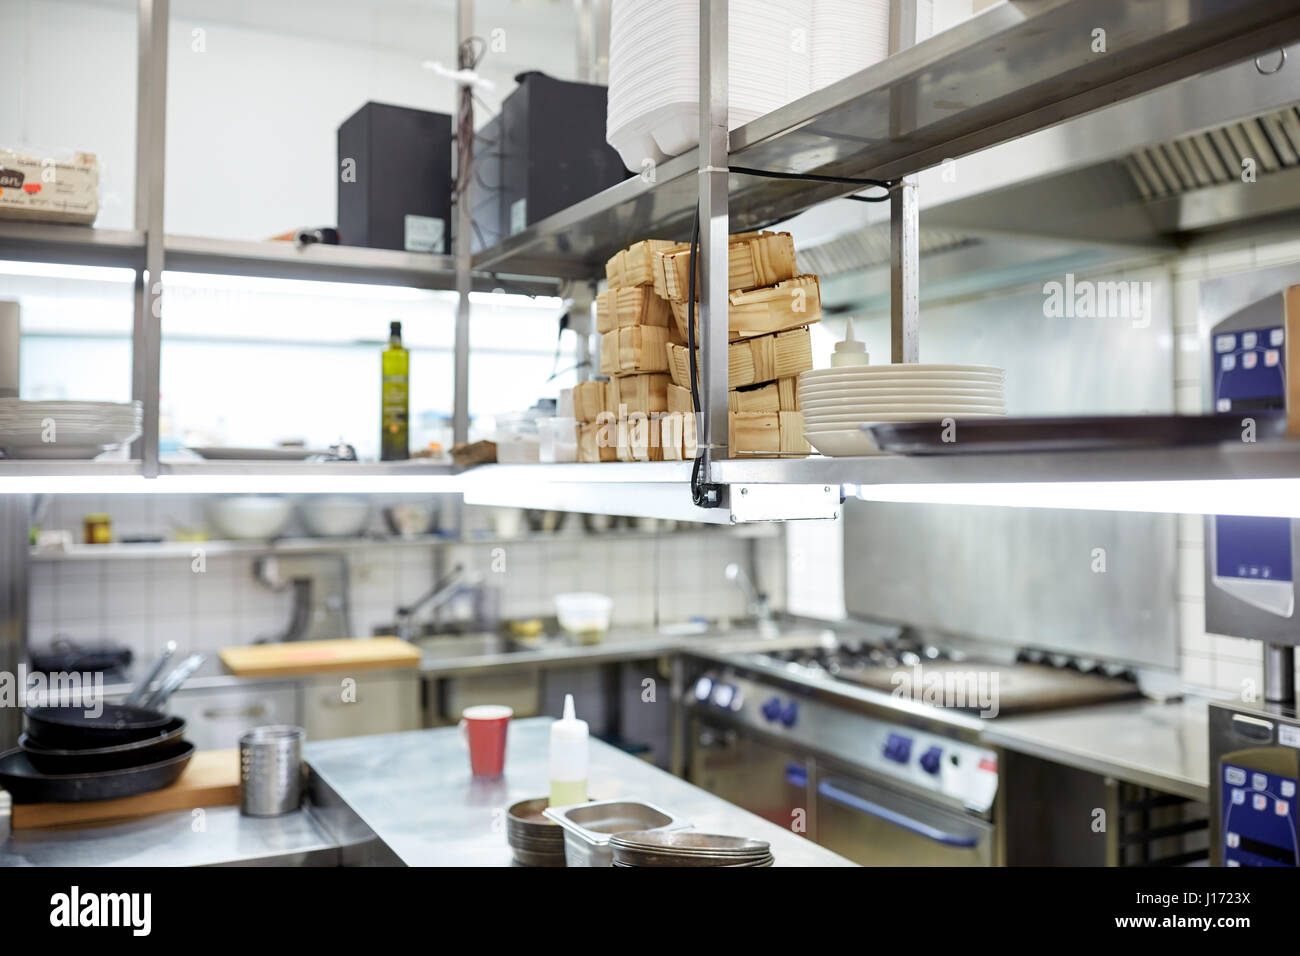 restaurant professional kitchen equipment Stock Photo